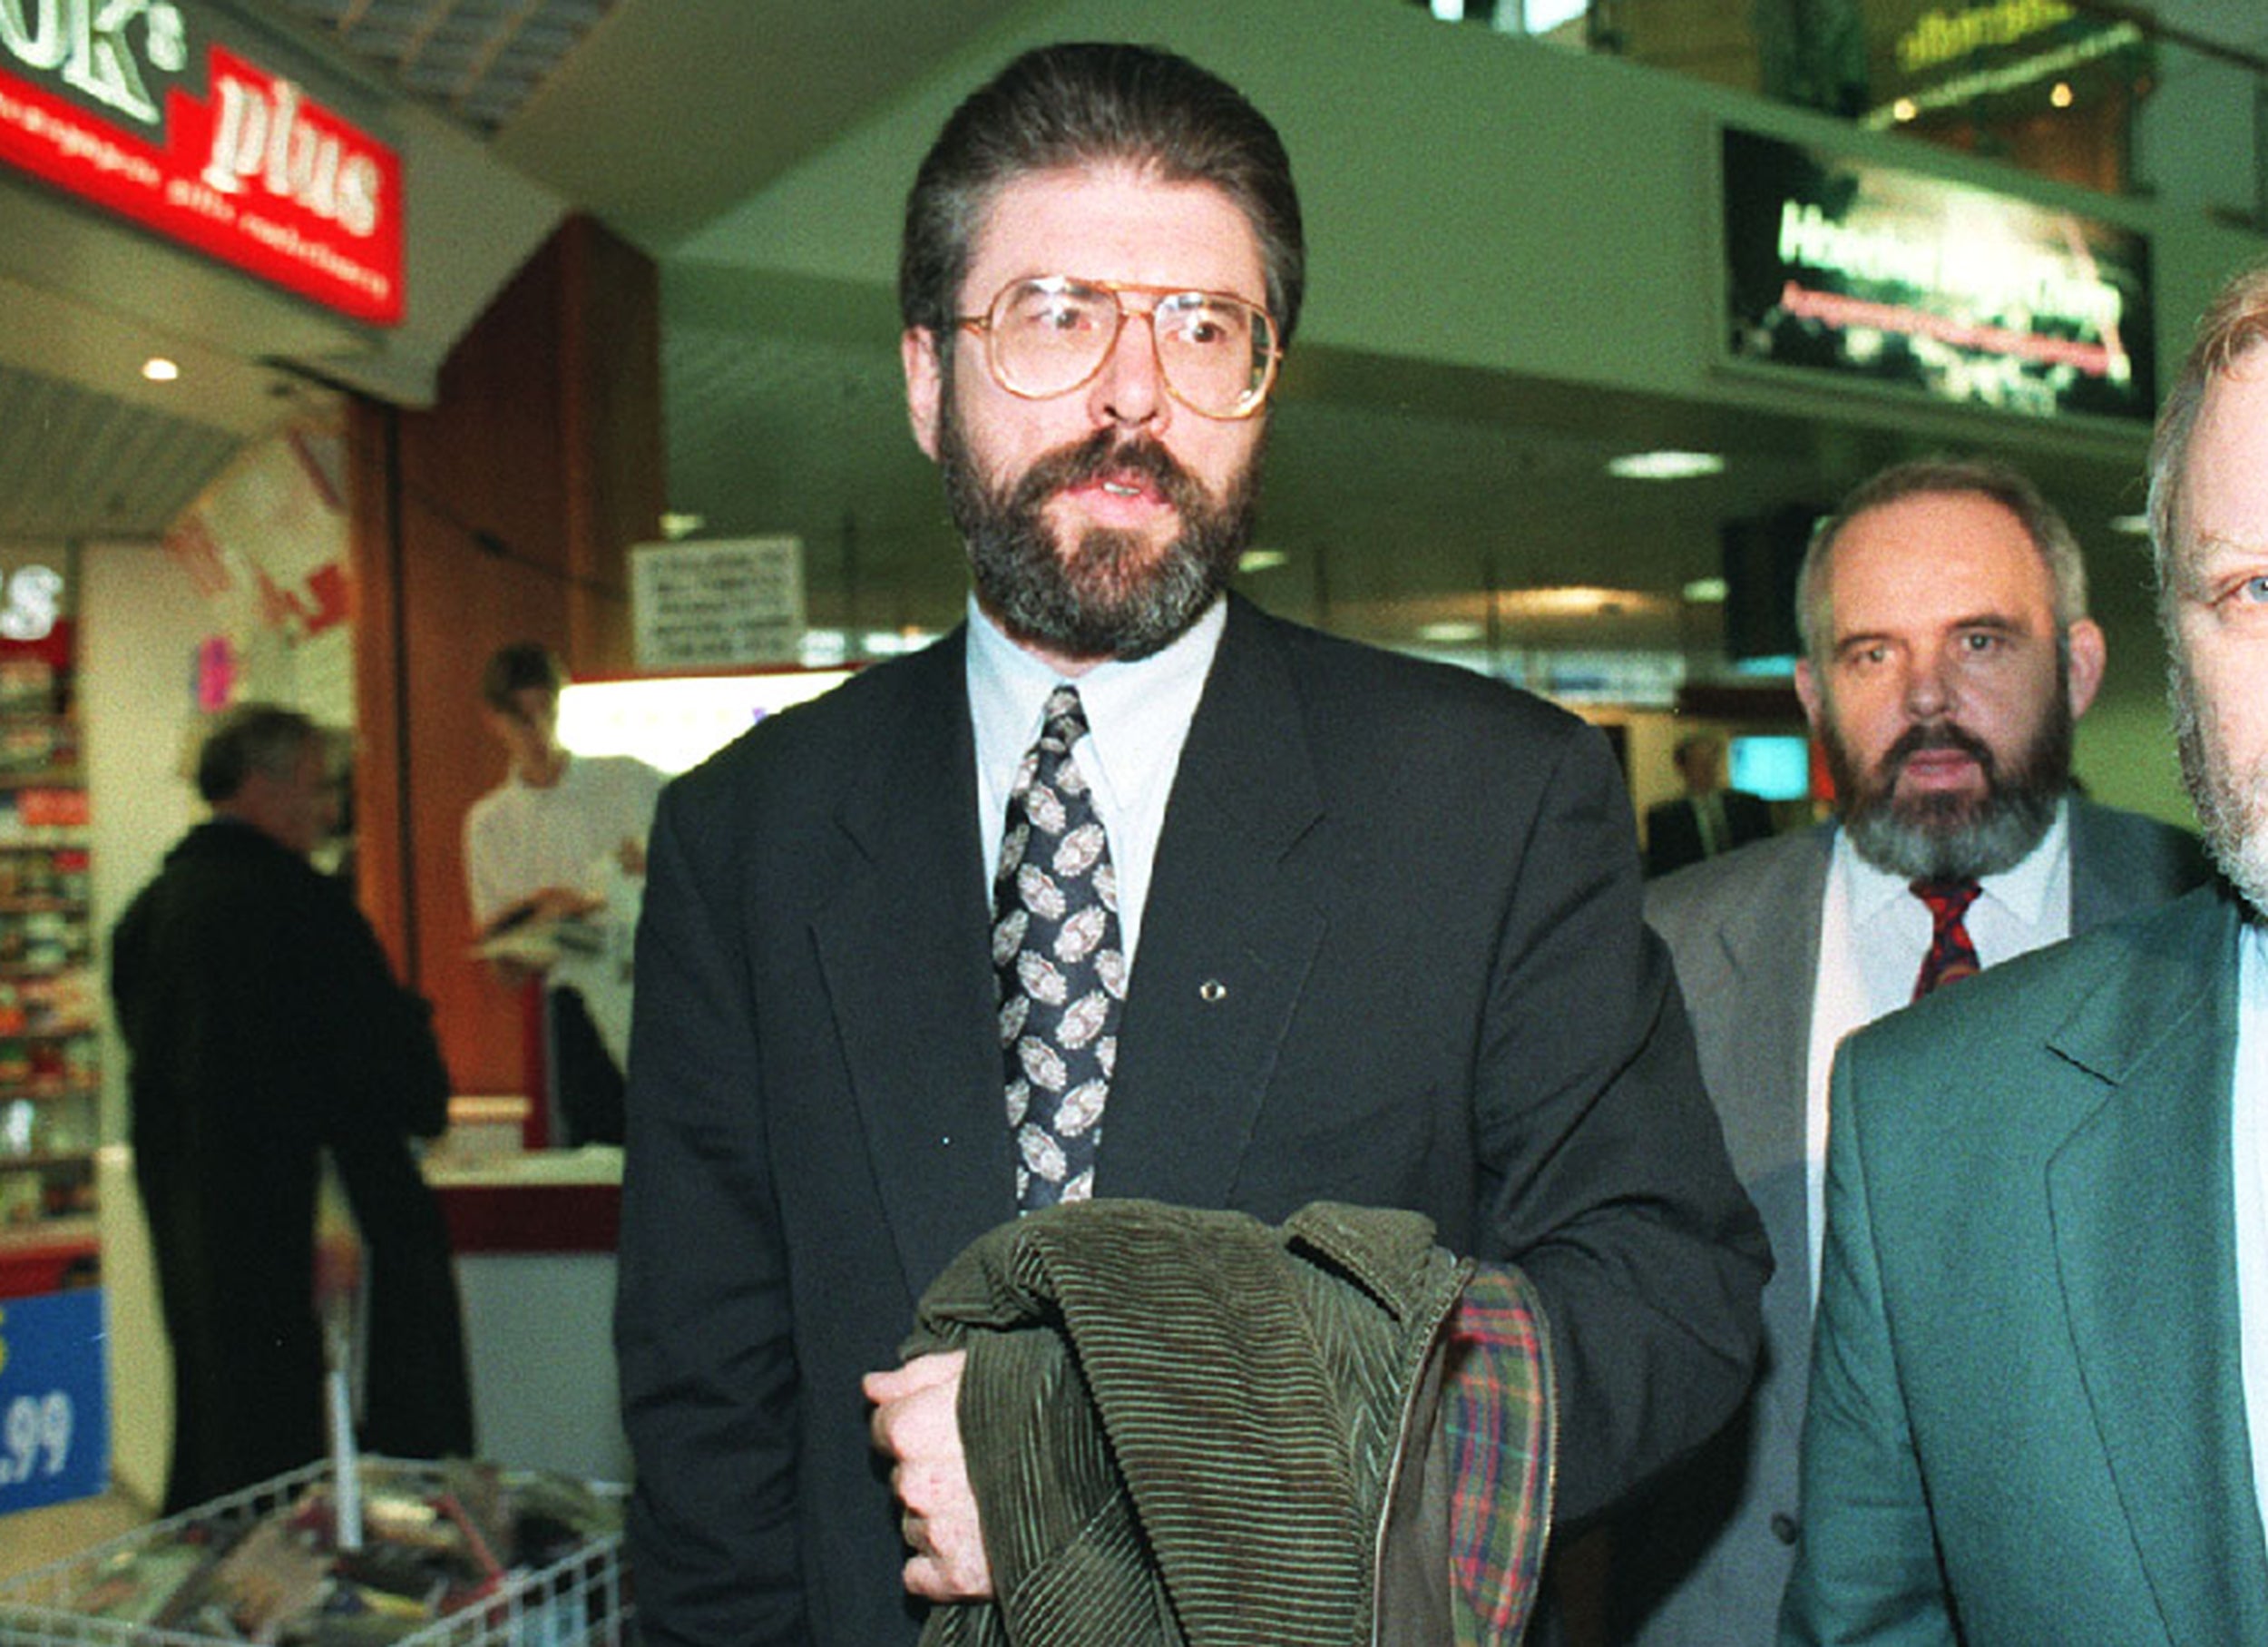 Gerry Adams in 1994